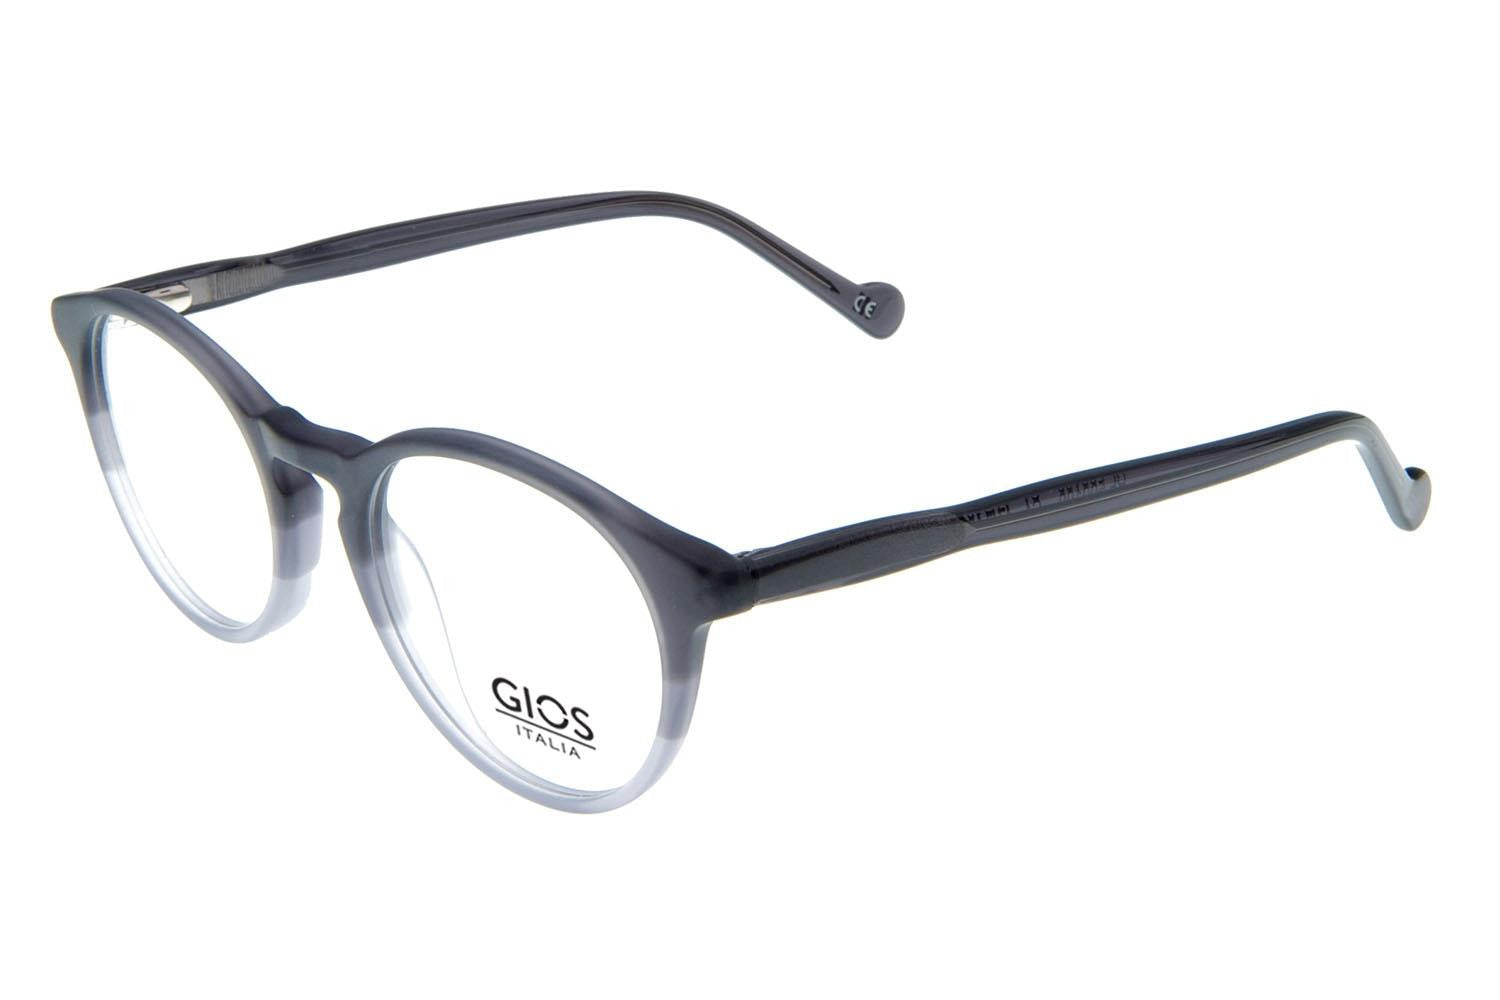 GIOS ITALIA Eyeglasses GRF500109 - Go-Readers.com